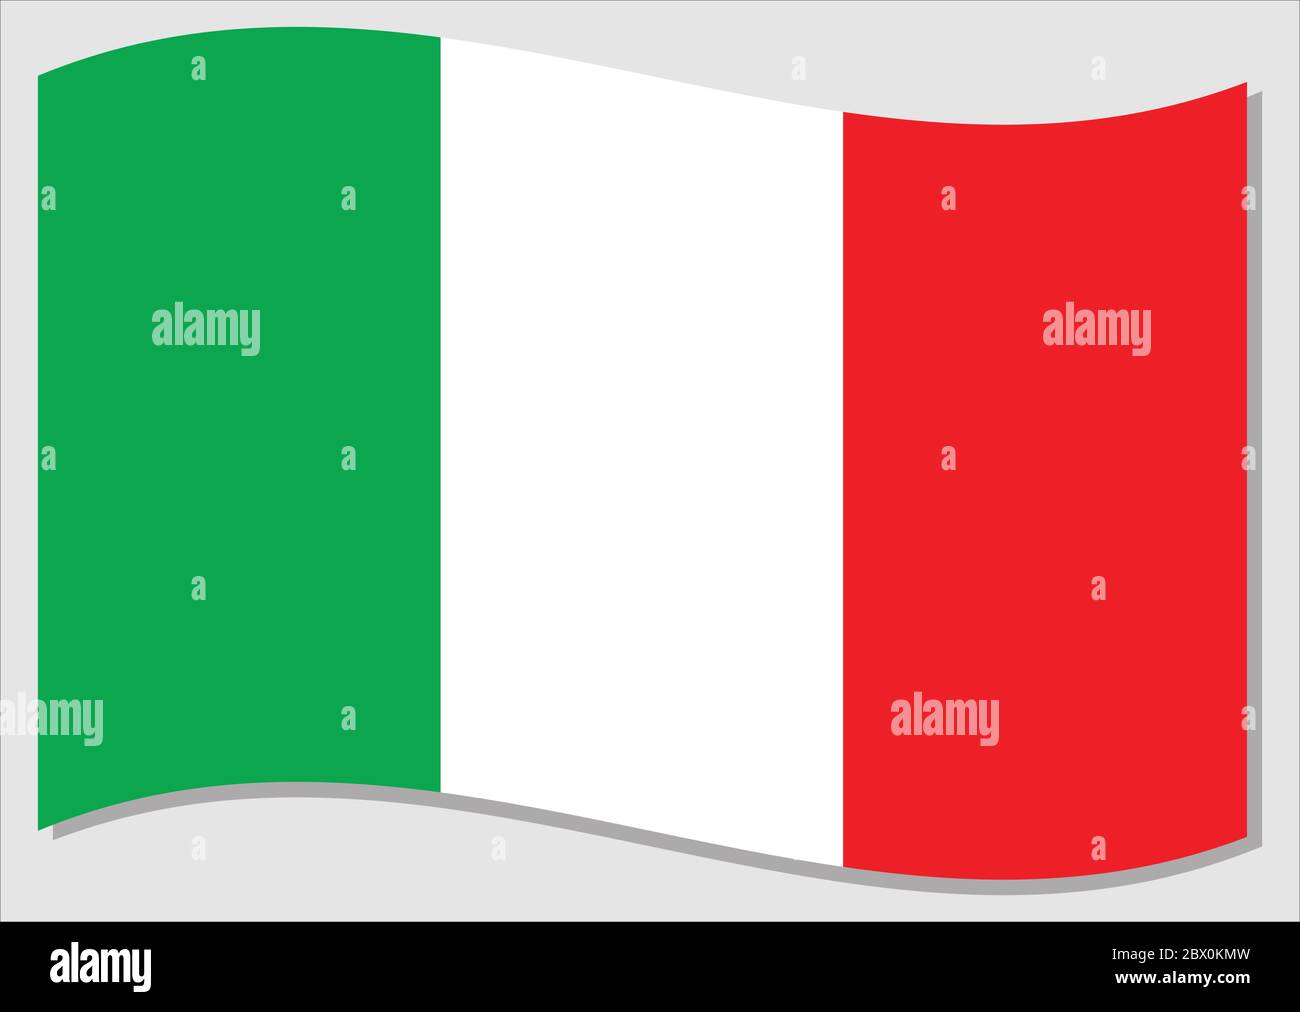 Bandiera ondulata dell'Italia grafica vettoriale. Immagine della bandiera italiana ondulata. La bandiera italiana wavin nel vento è un simbolo di libertà e indipendenza. Illustrazione Vettoriale